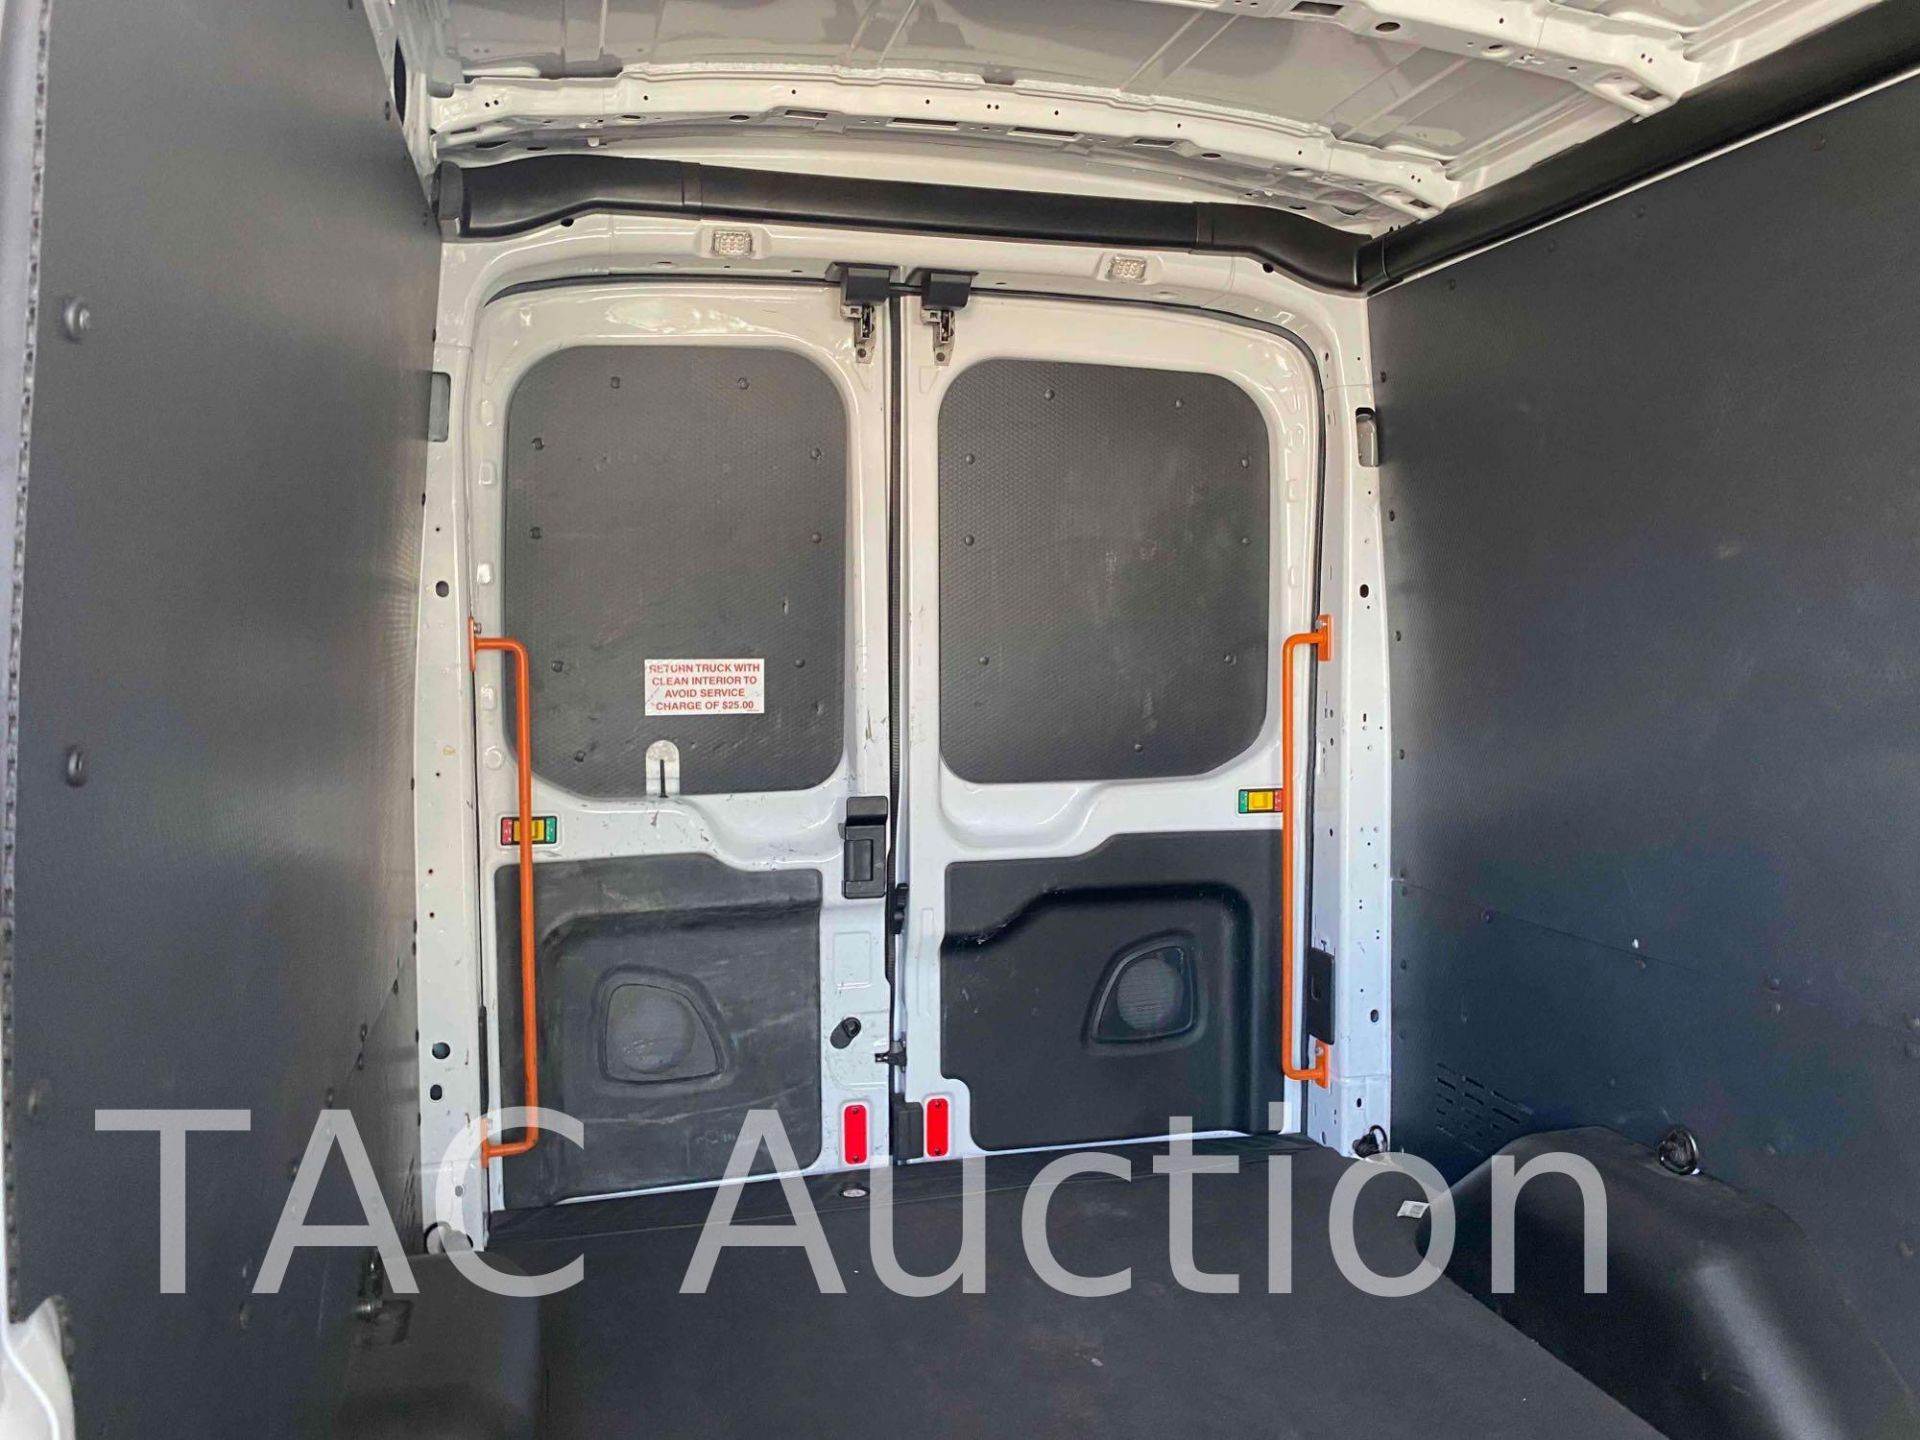 2019 Ford Transit 150 Cargo Van - Image 7 of 48